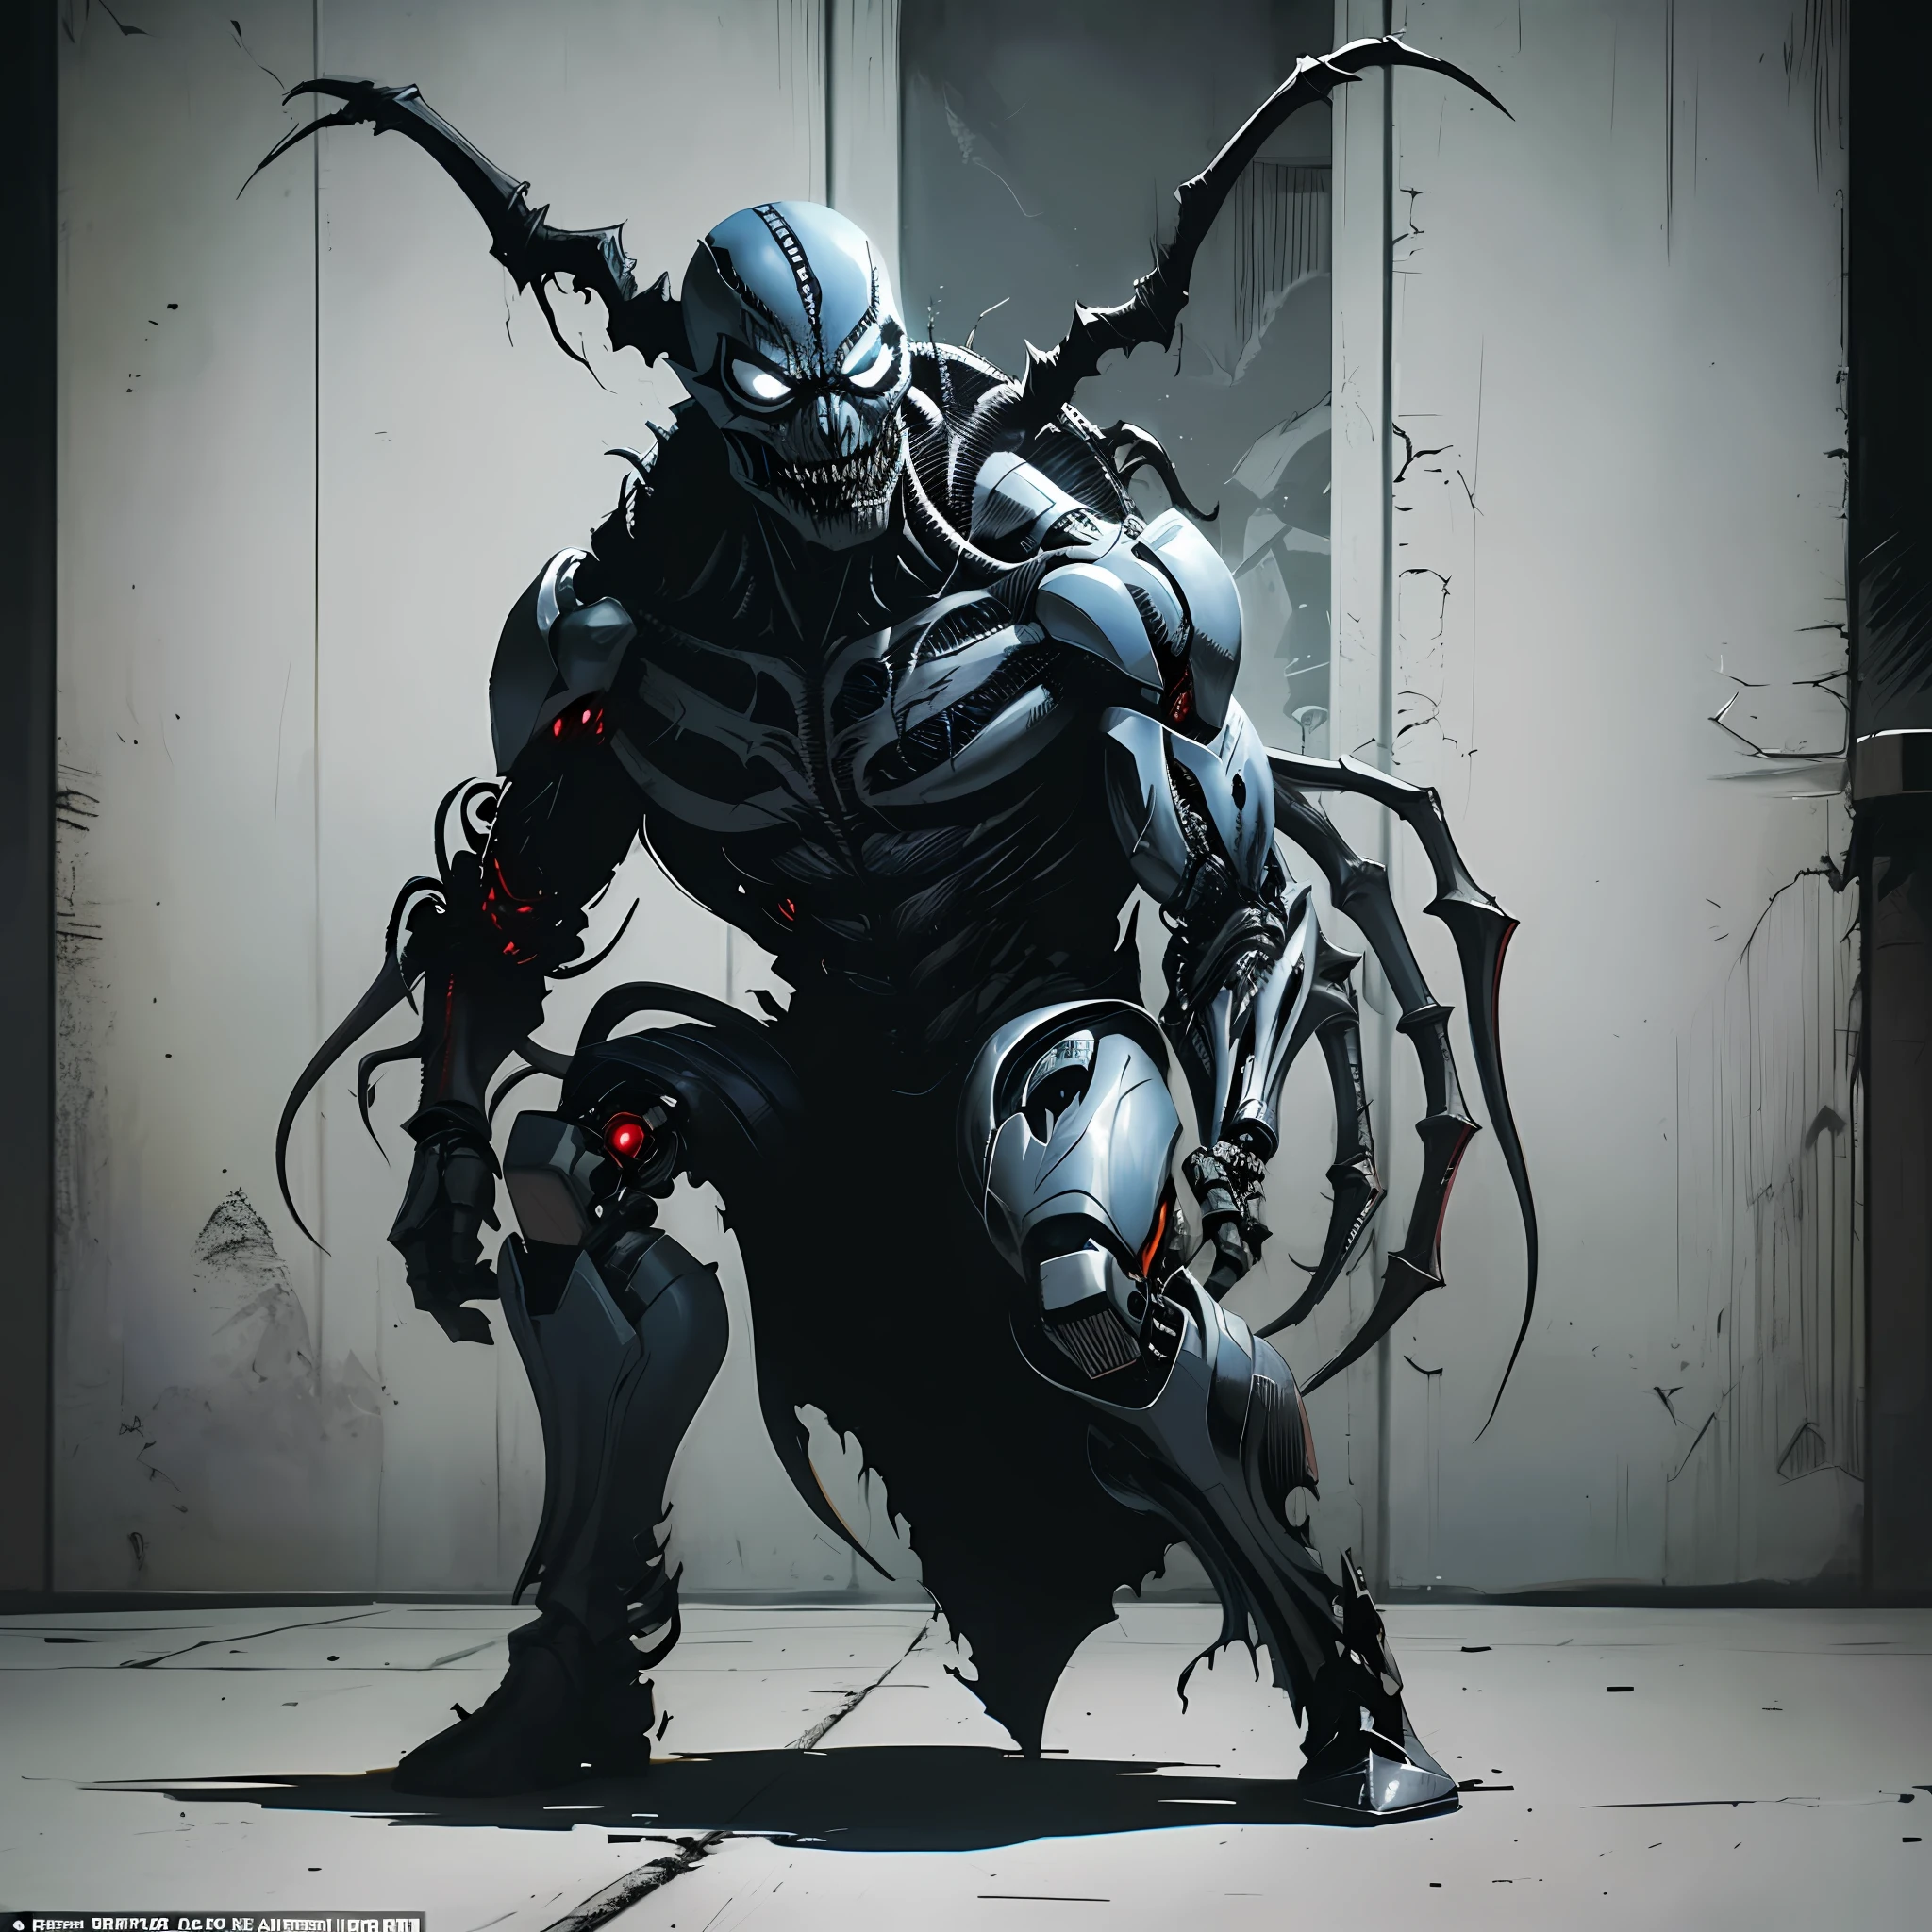 Cria de Demônio Ciborgue de aparência sinistra infectada com Simbionte Venom, inspirado na arte de Todd McFarlane, capturando o ambiente sombrio e sombrio da Image Comics e da DC Comics. Cena cheia de ação ambientada em um campo de batalha, retratando uma presença aterrorizante e vil. Renderização de corpo inteiro de caractere único, Obra de arte